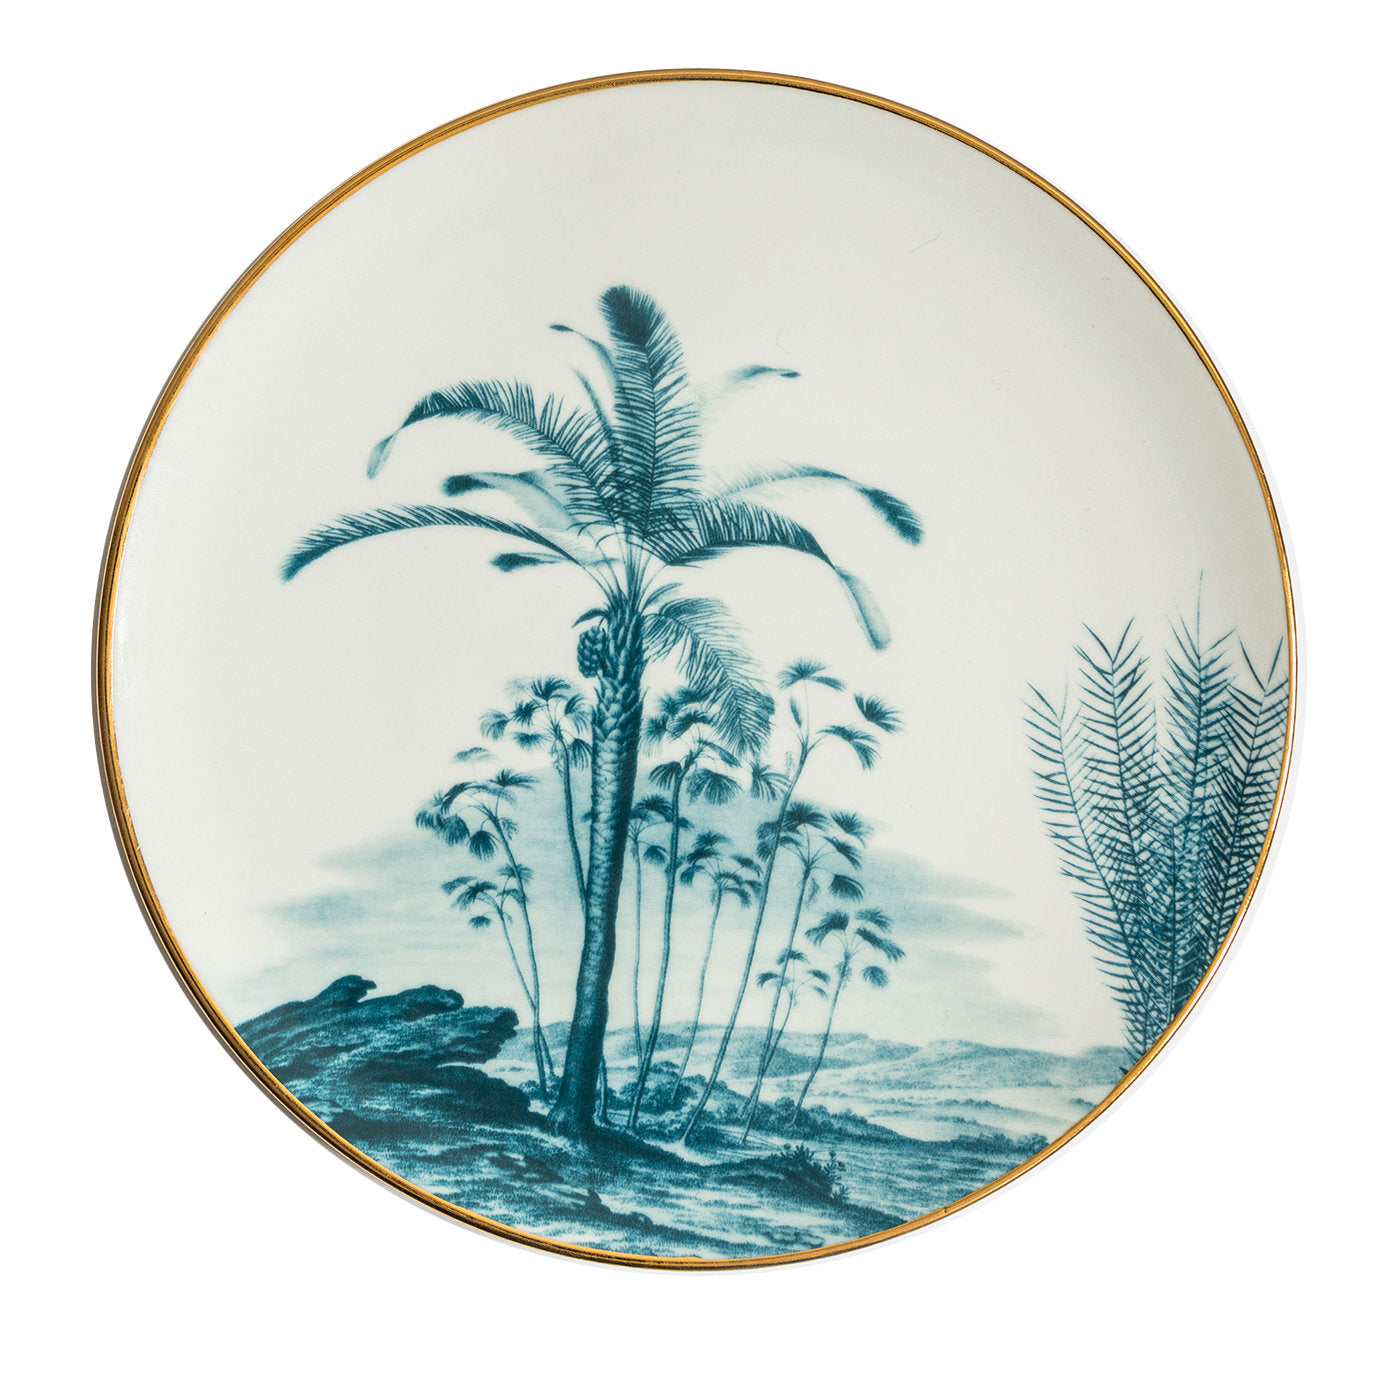 Las Palmas Porcelain Dinner Plate With Blue Tropical Lendscape #2 - Main view